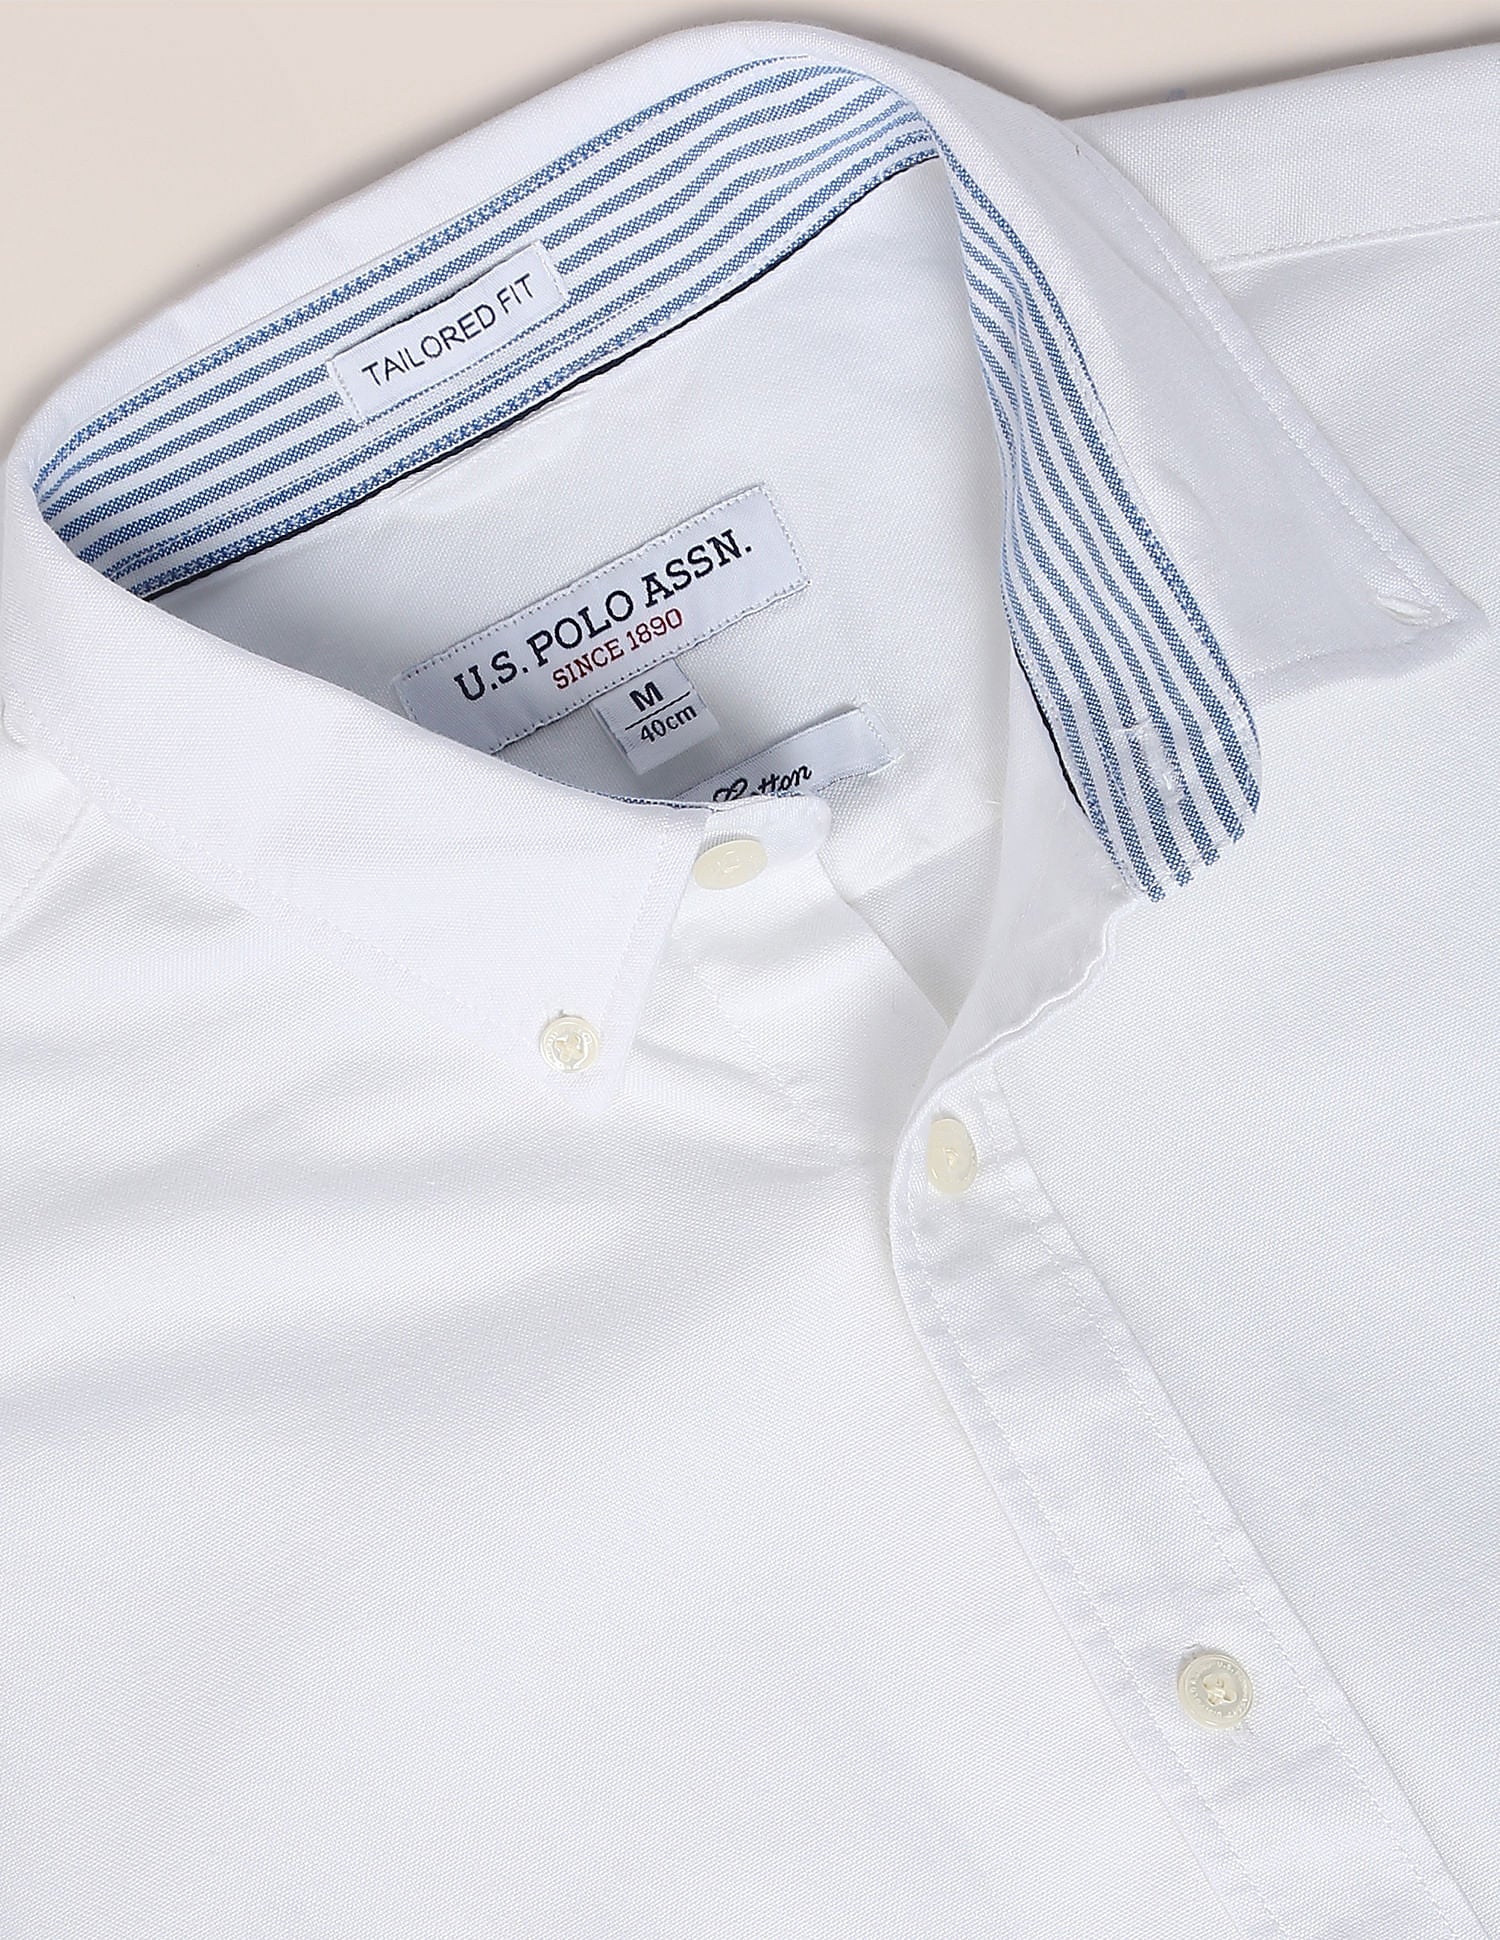 Button Down Collar Premium Cotton Shirt – U.S. Polo Assn. India